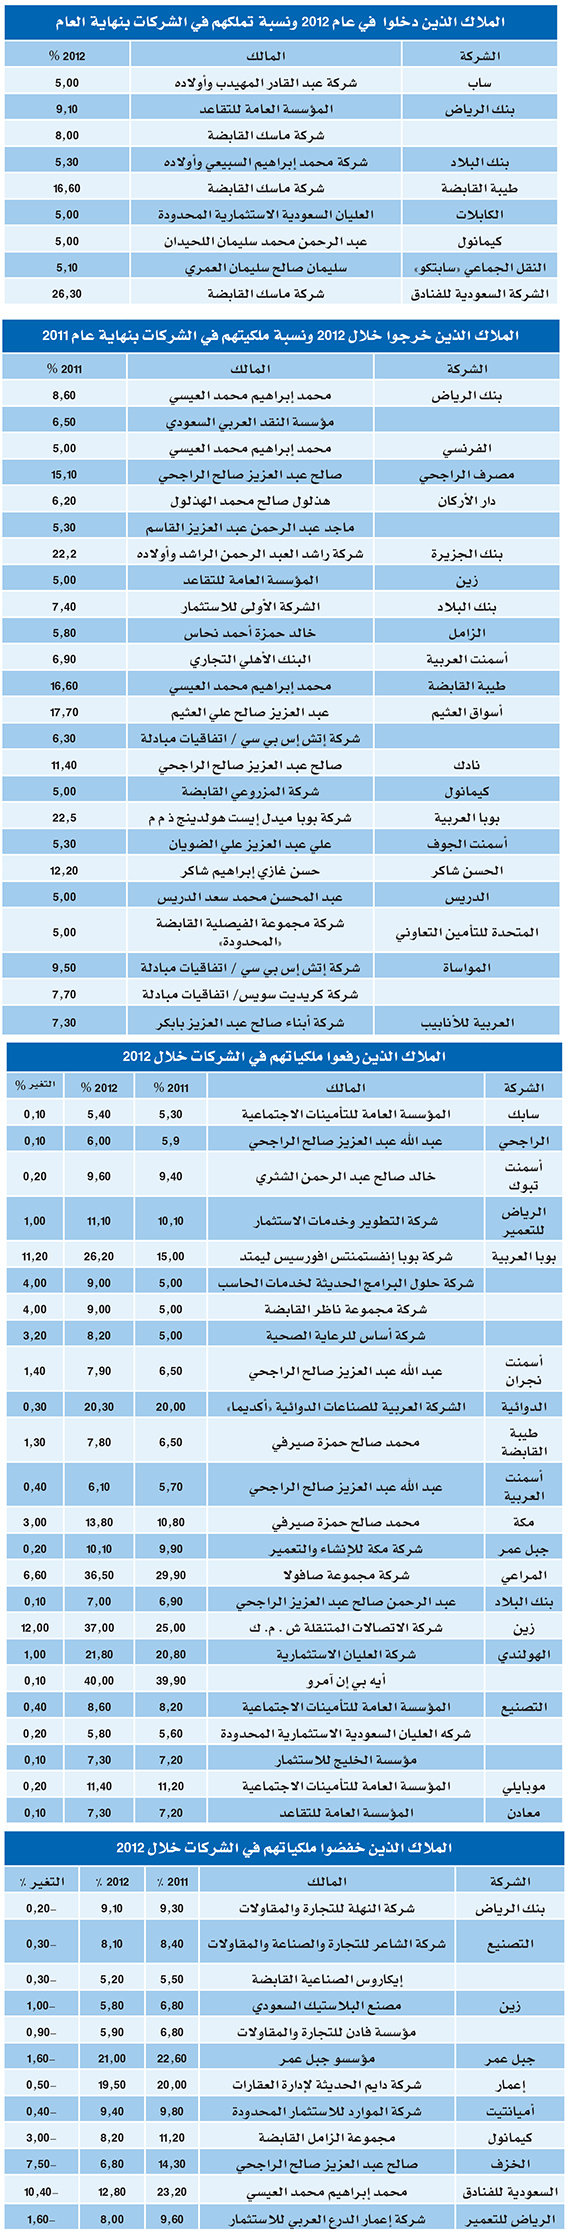 69 حركة تغيير لـ 39 شركة من ضمن  أكبر 100 شركة سعودية في 2012